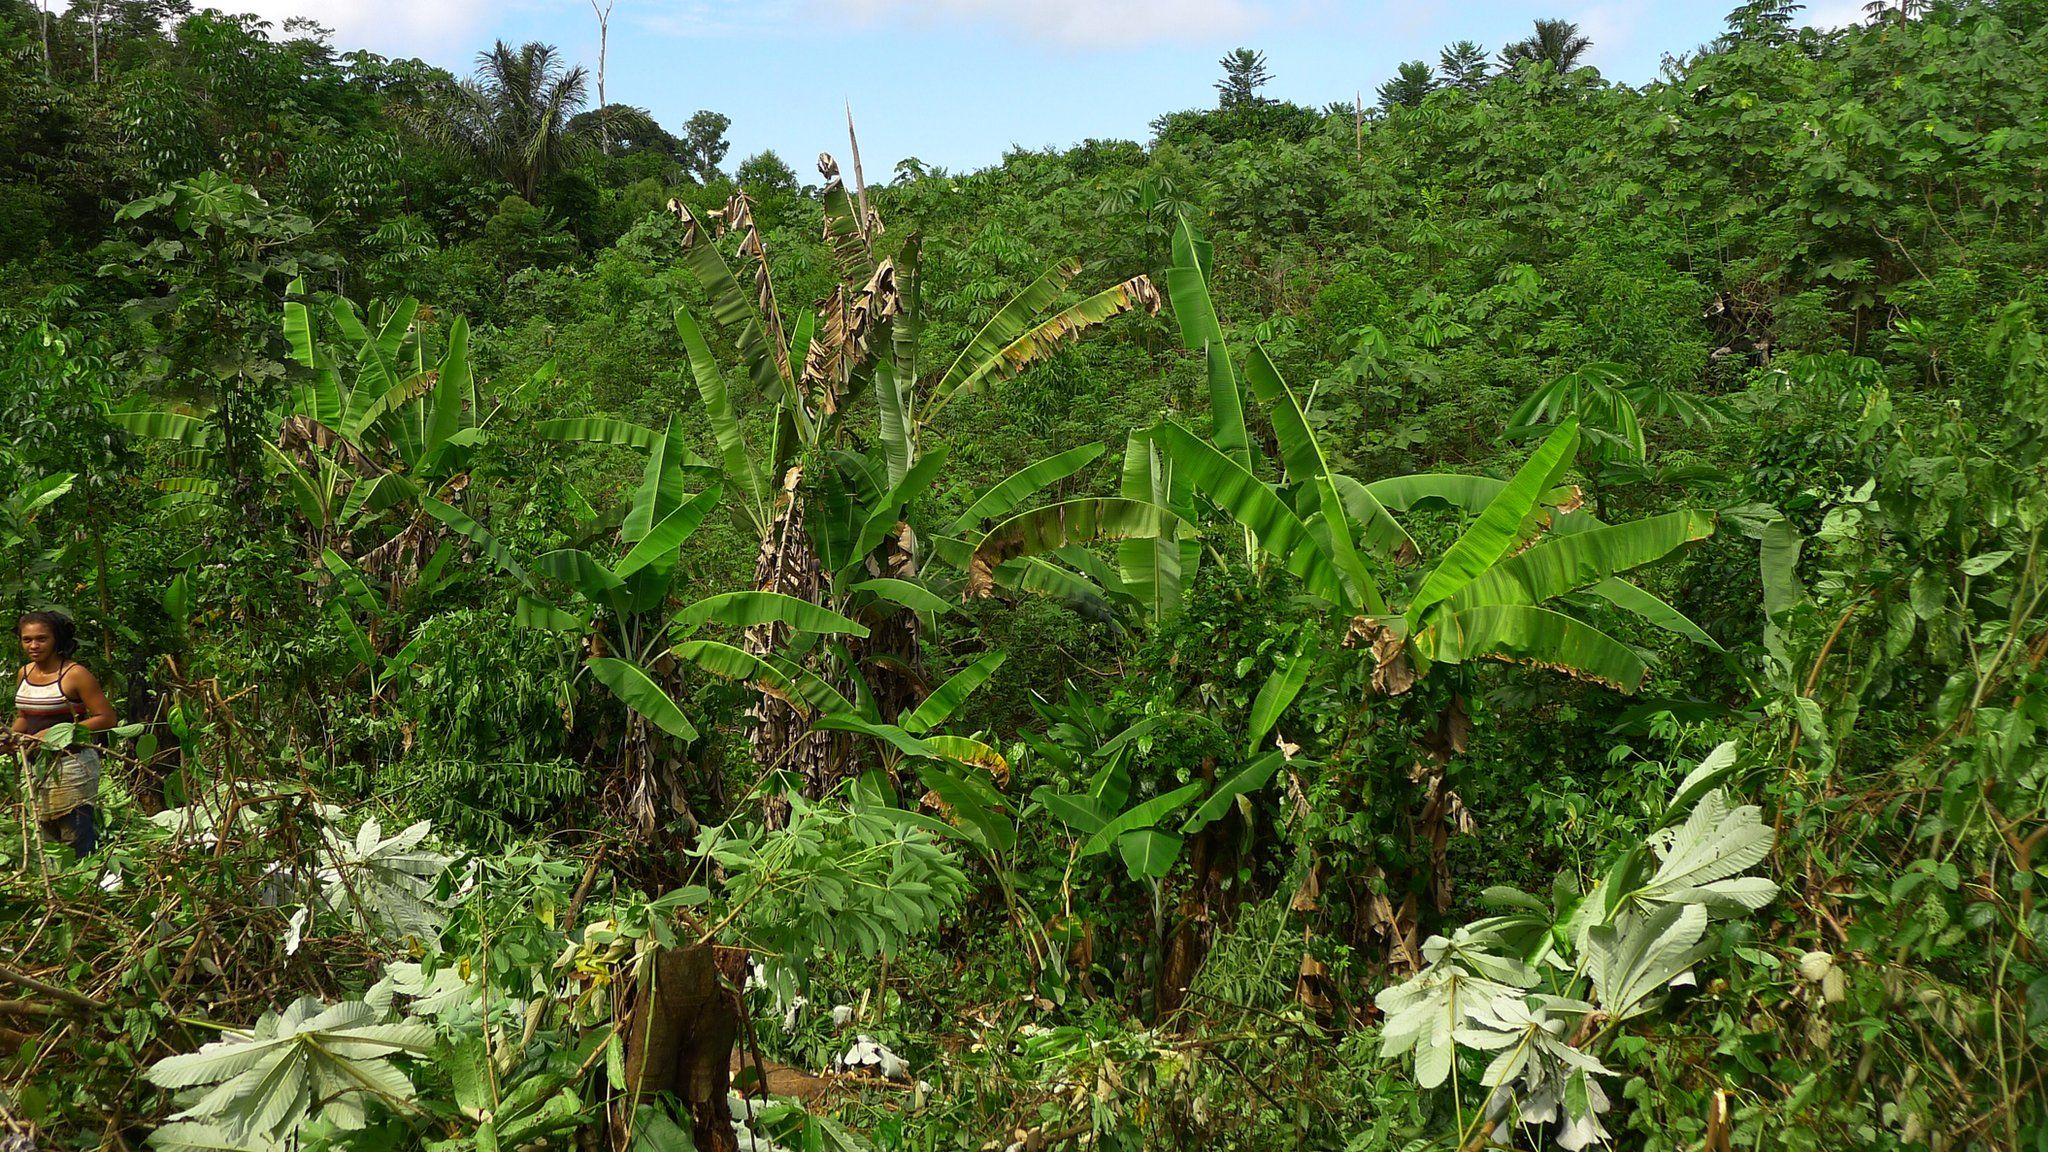 Secondary rainforest, Brazil (Image: Frans Bongers)